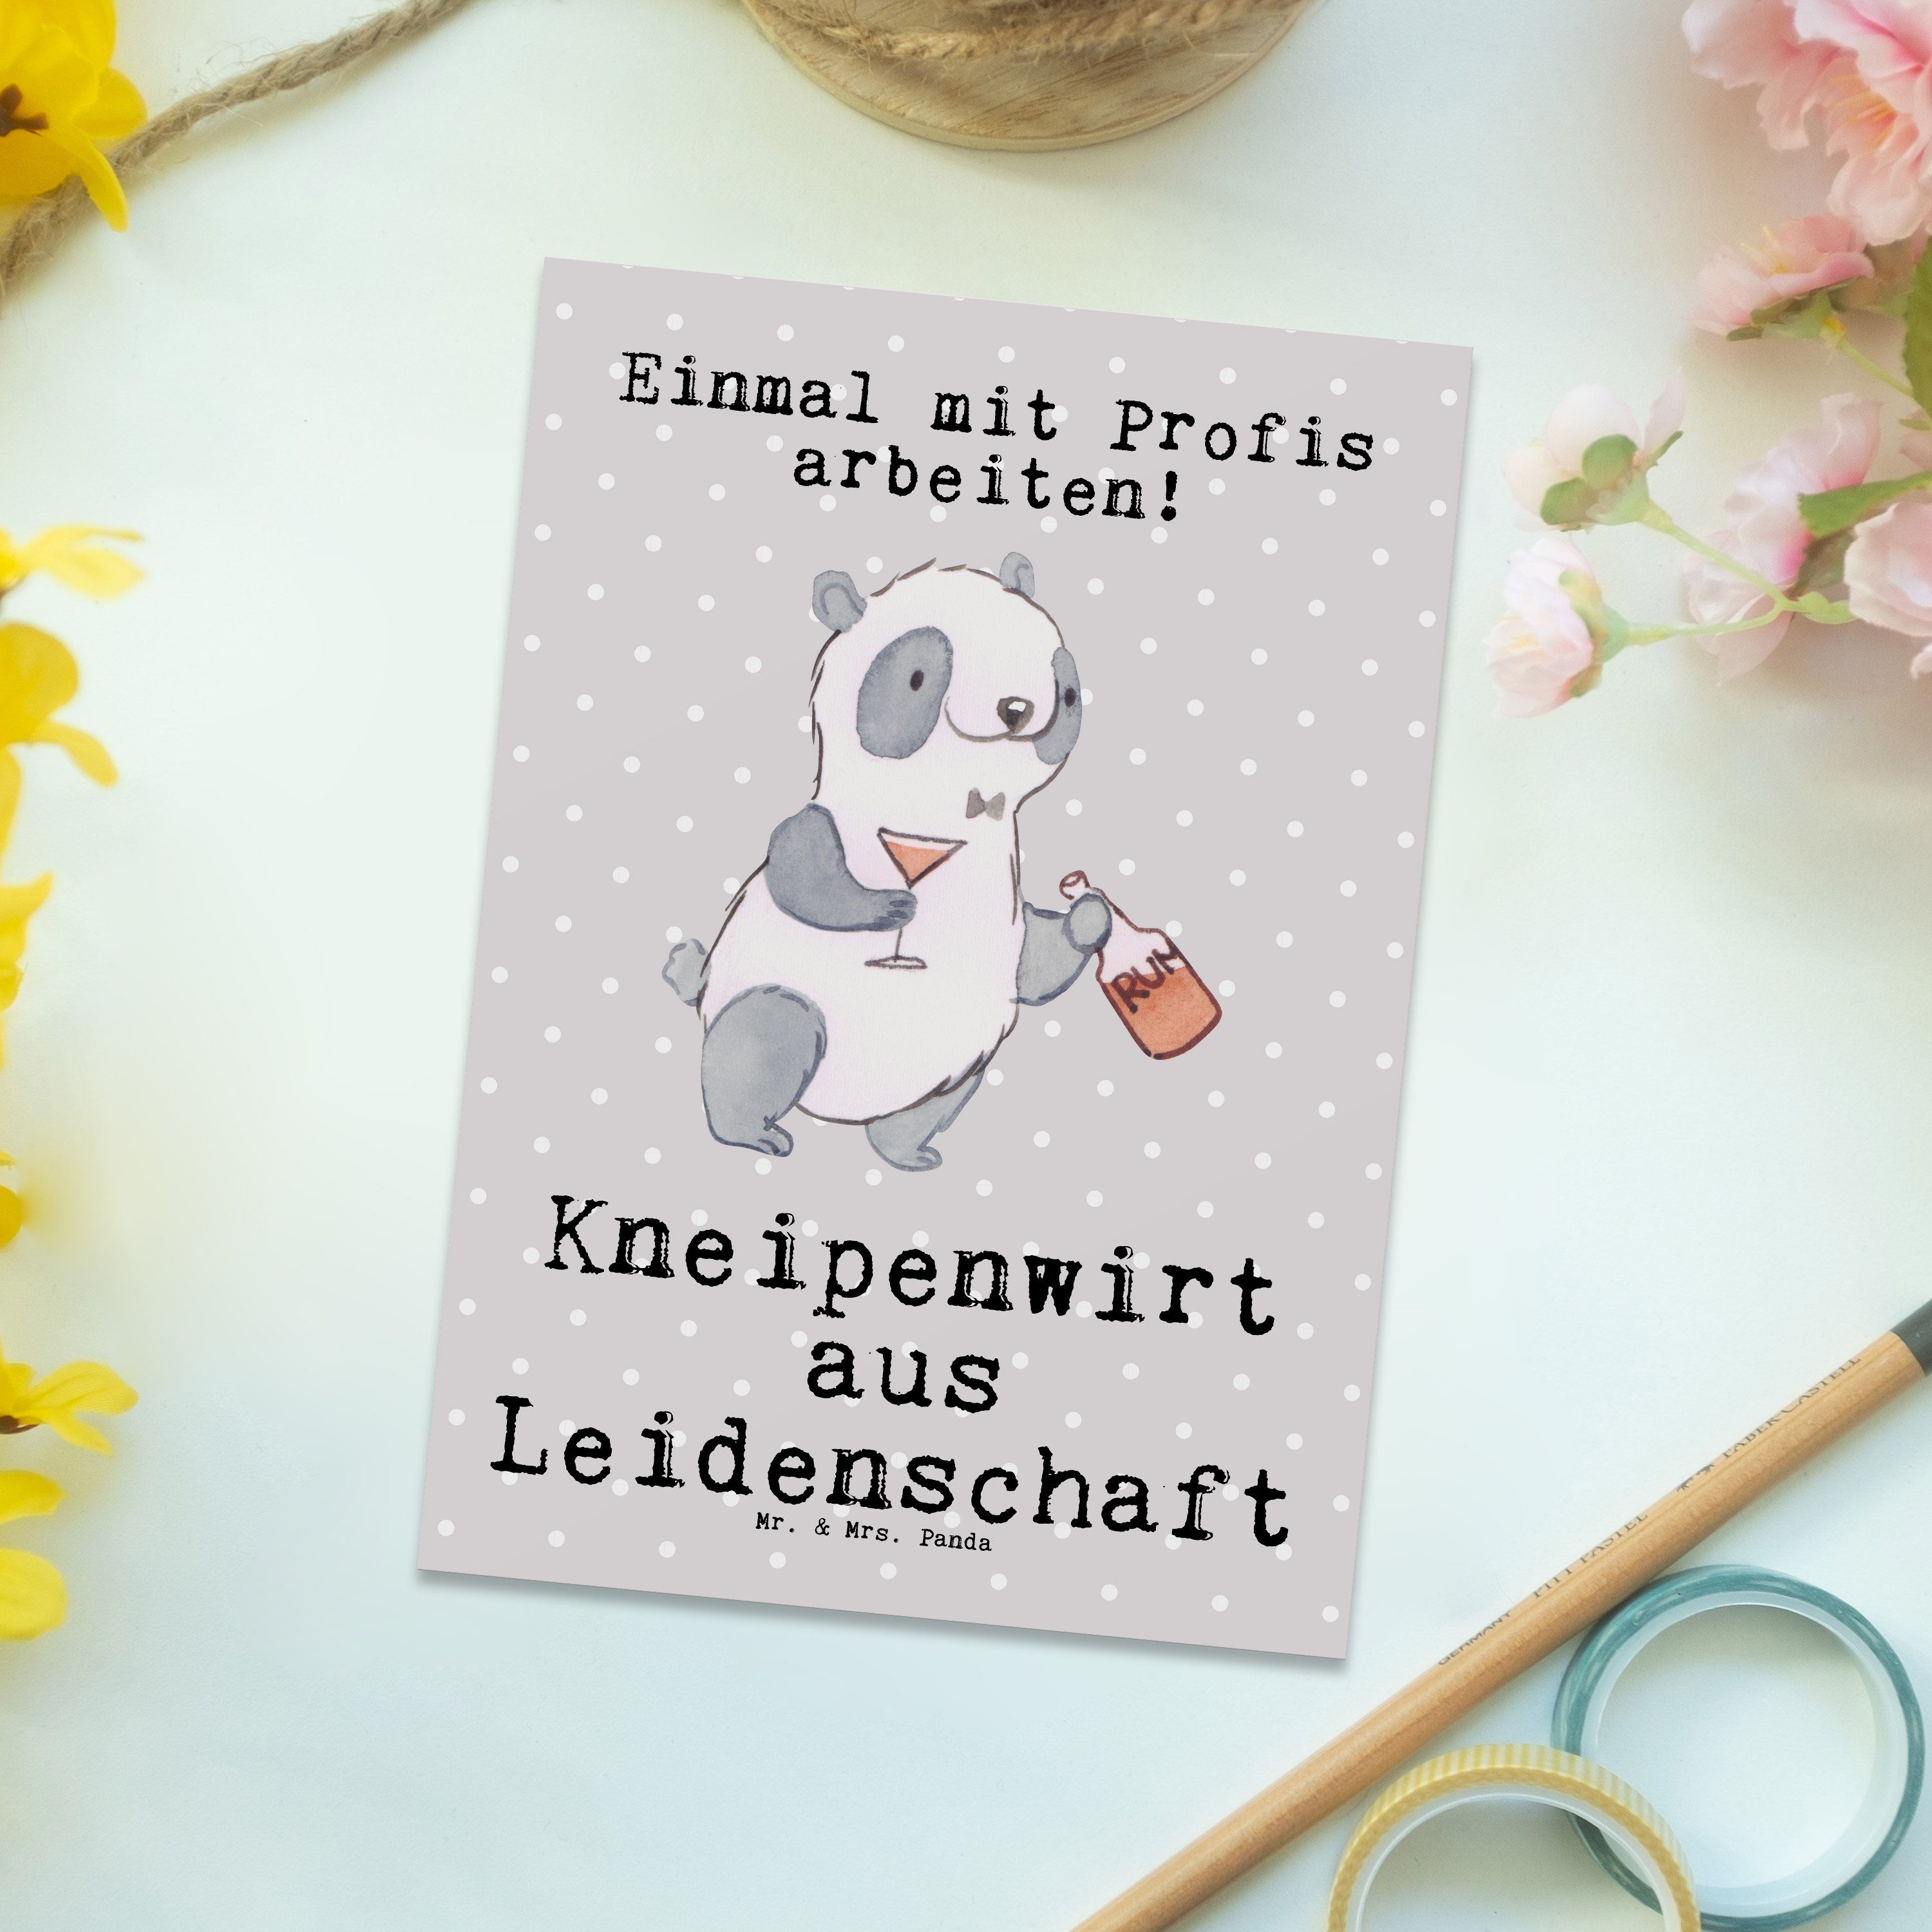 Mr. & Mrs. Panda Postkarte Kneipenwirt aus Leidenschaft - Grau Pastell - Geschenk, Gastwirt, Erö